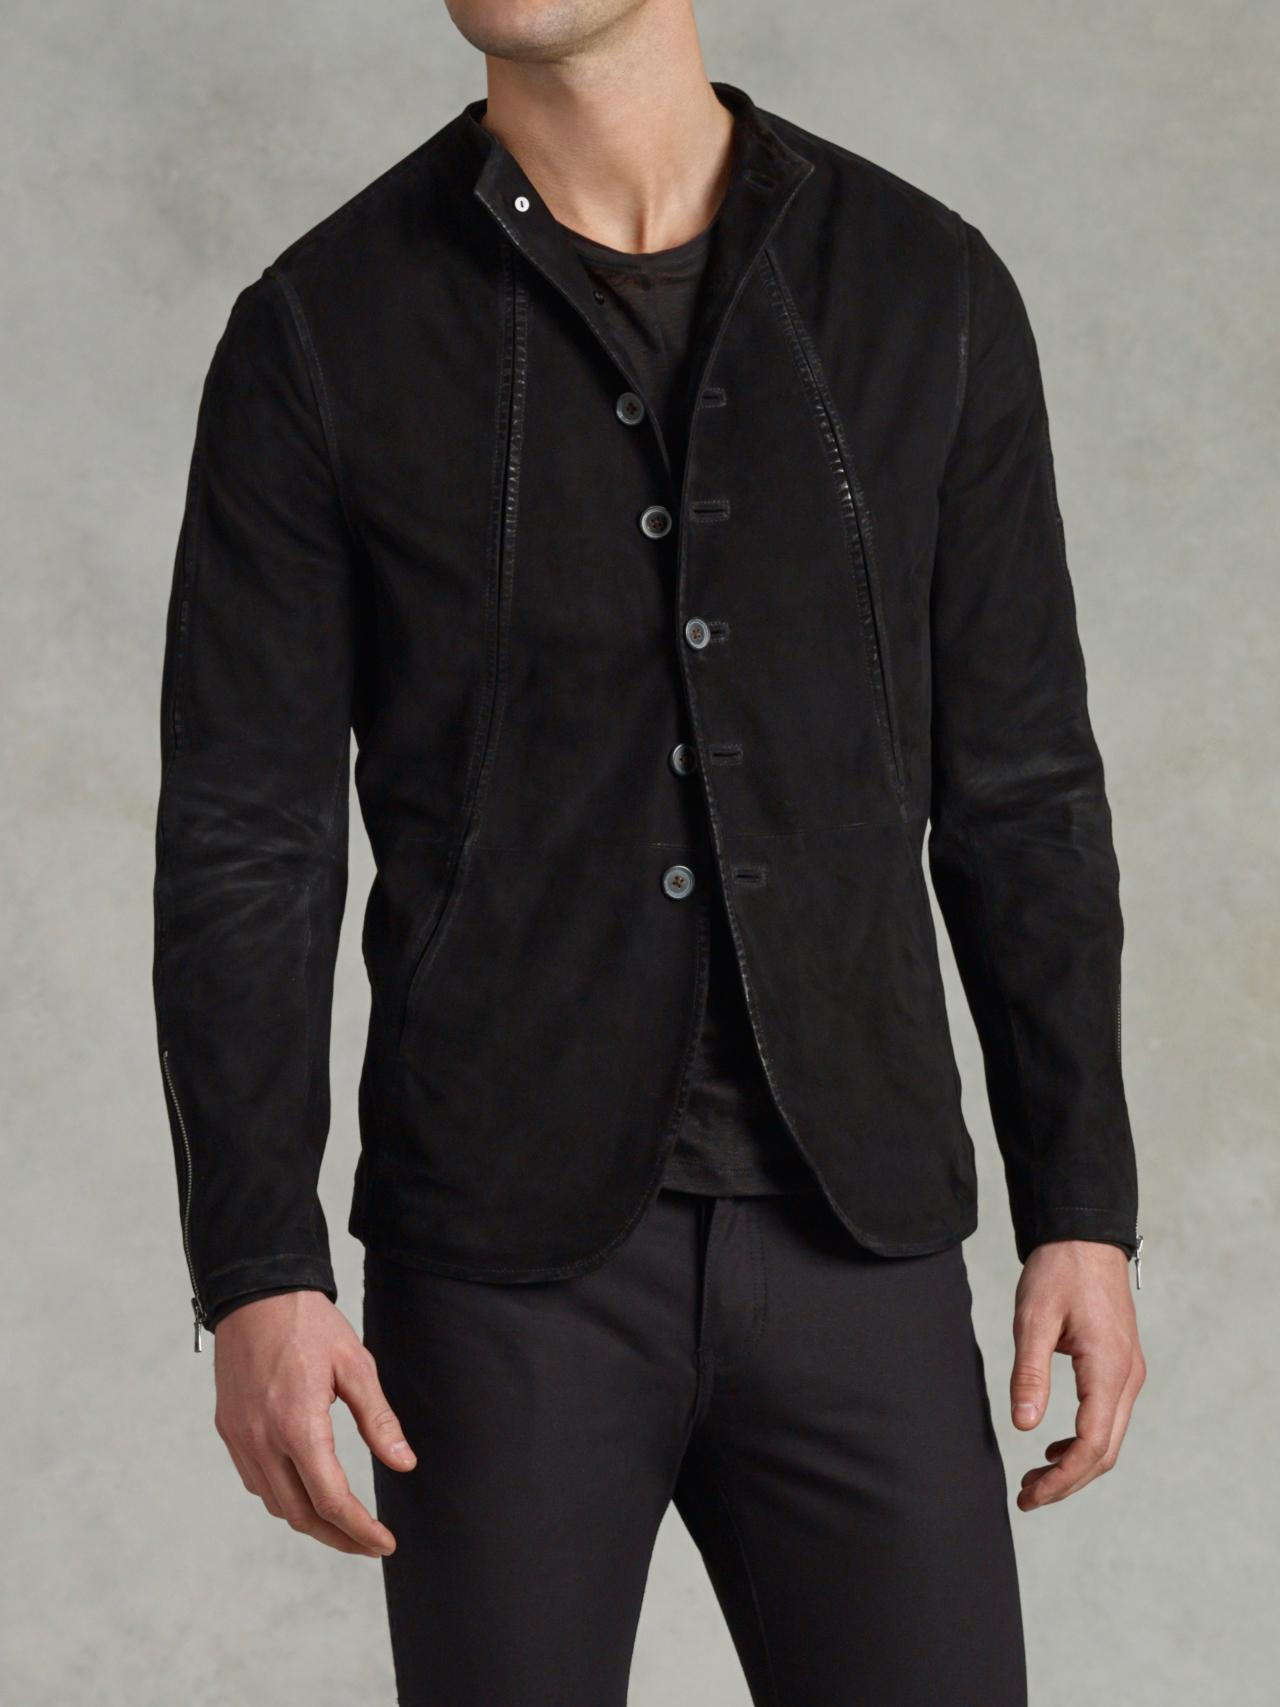 John varvatos Funnel Neck Leather Jacket in Black for Men | Lyst